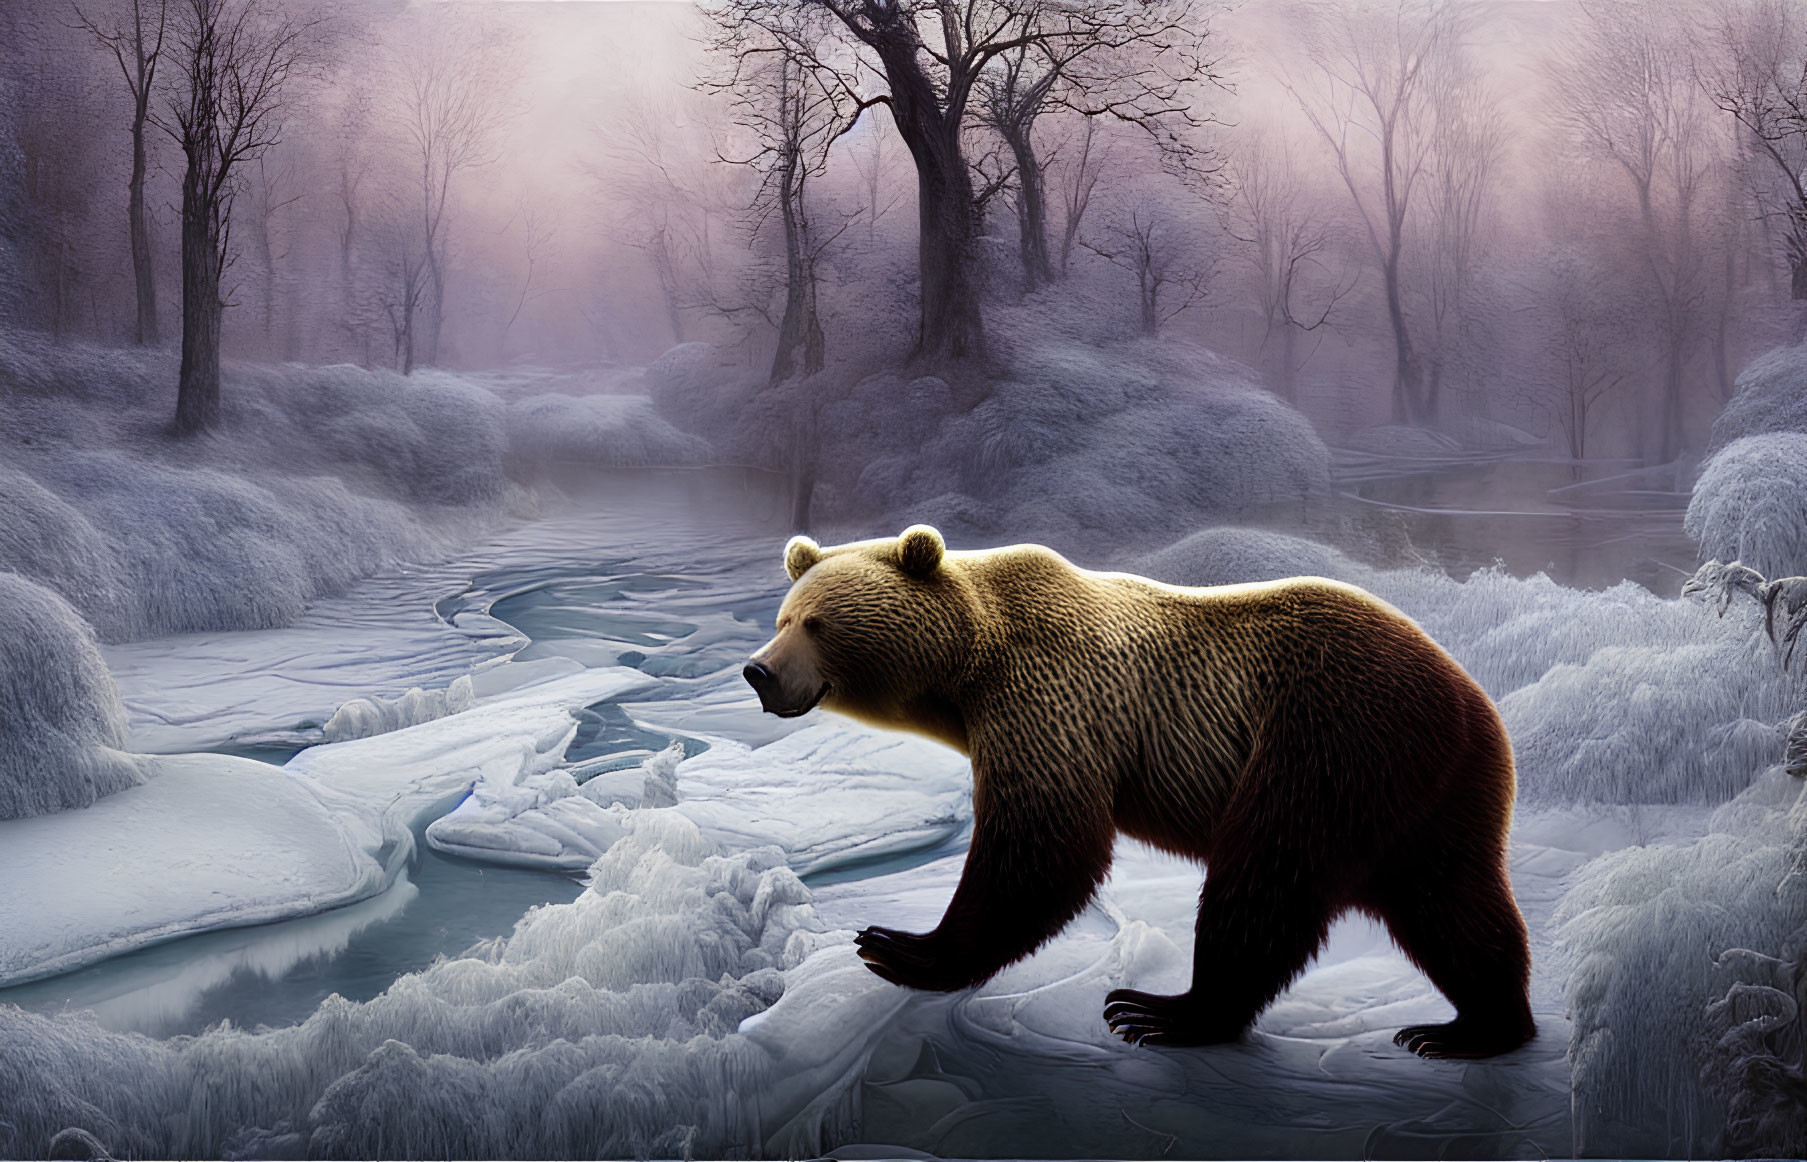 Bear in Frosty Landscape with Frozen Stream